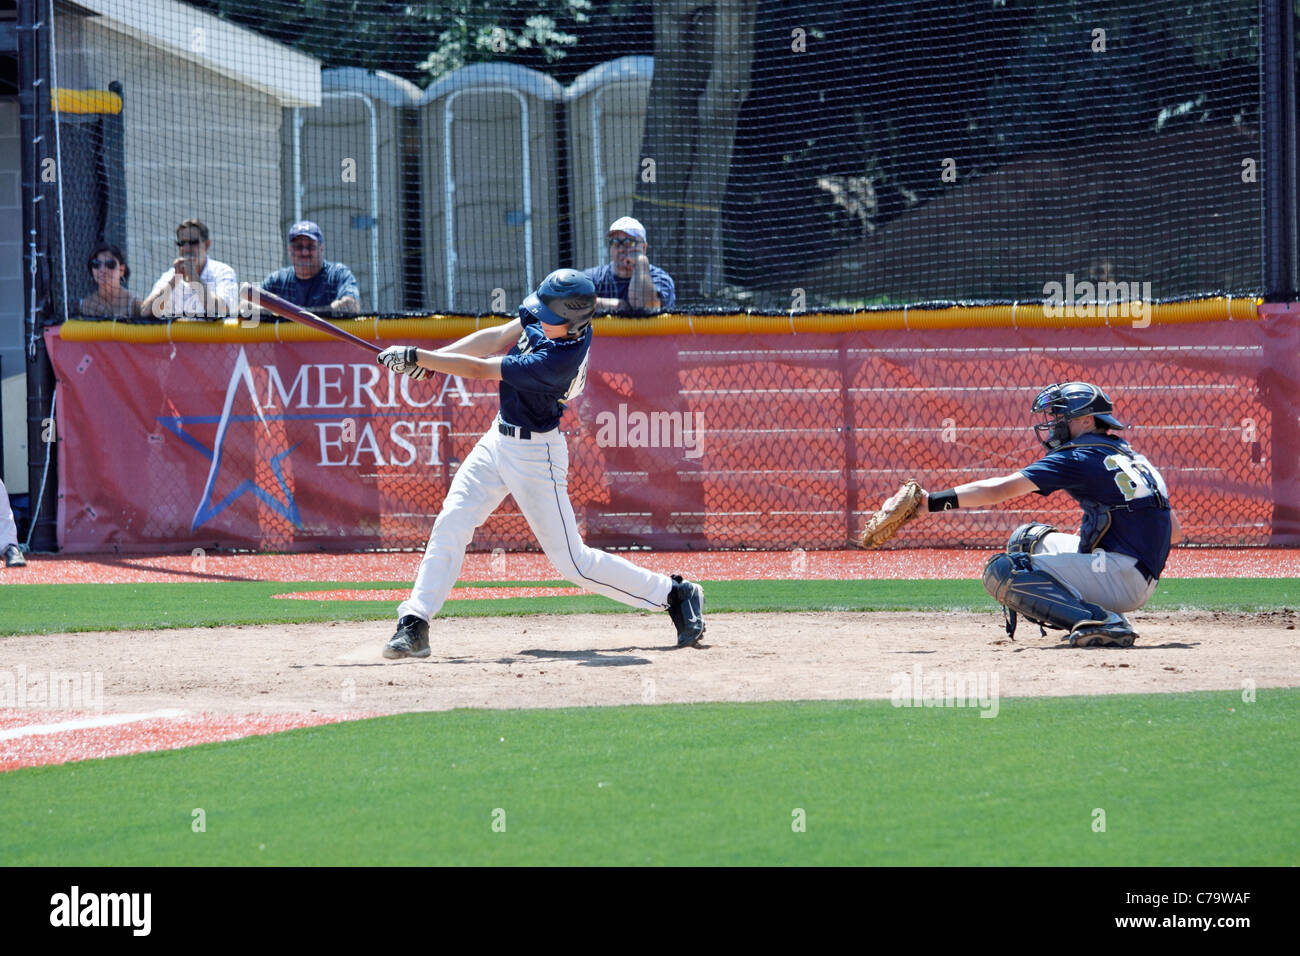 Batter at baseball stadium Stony Brook University Long Island NY Stock Photo